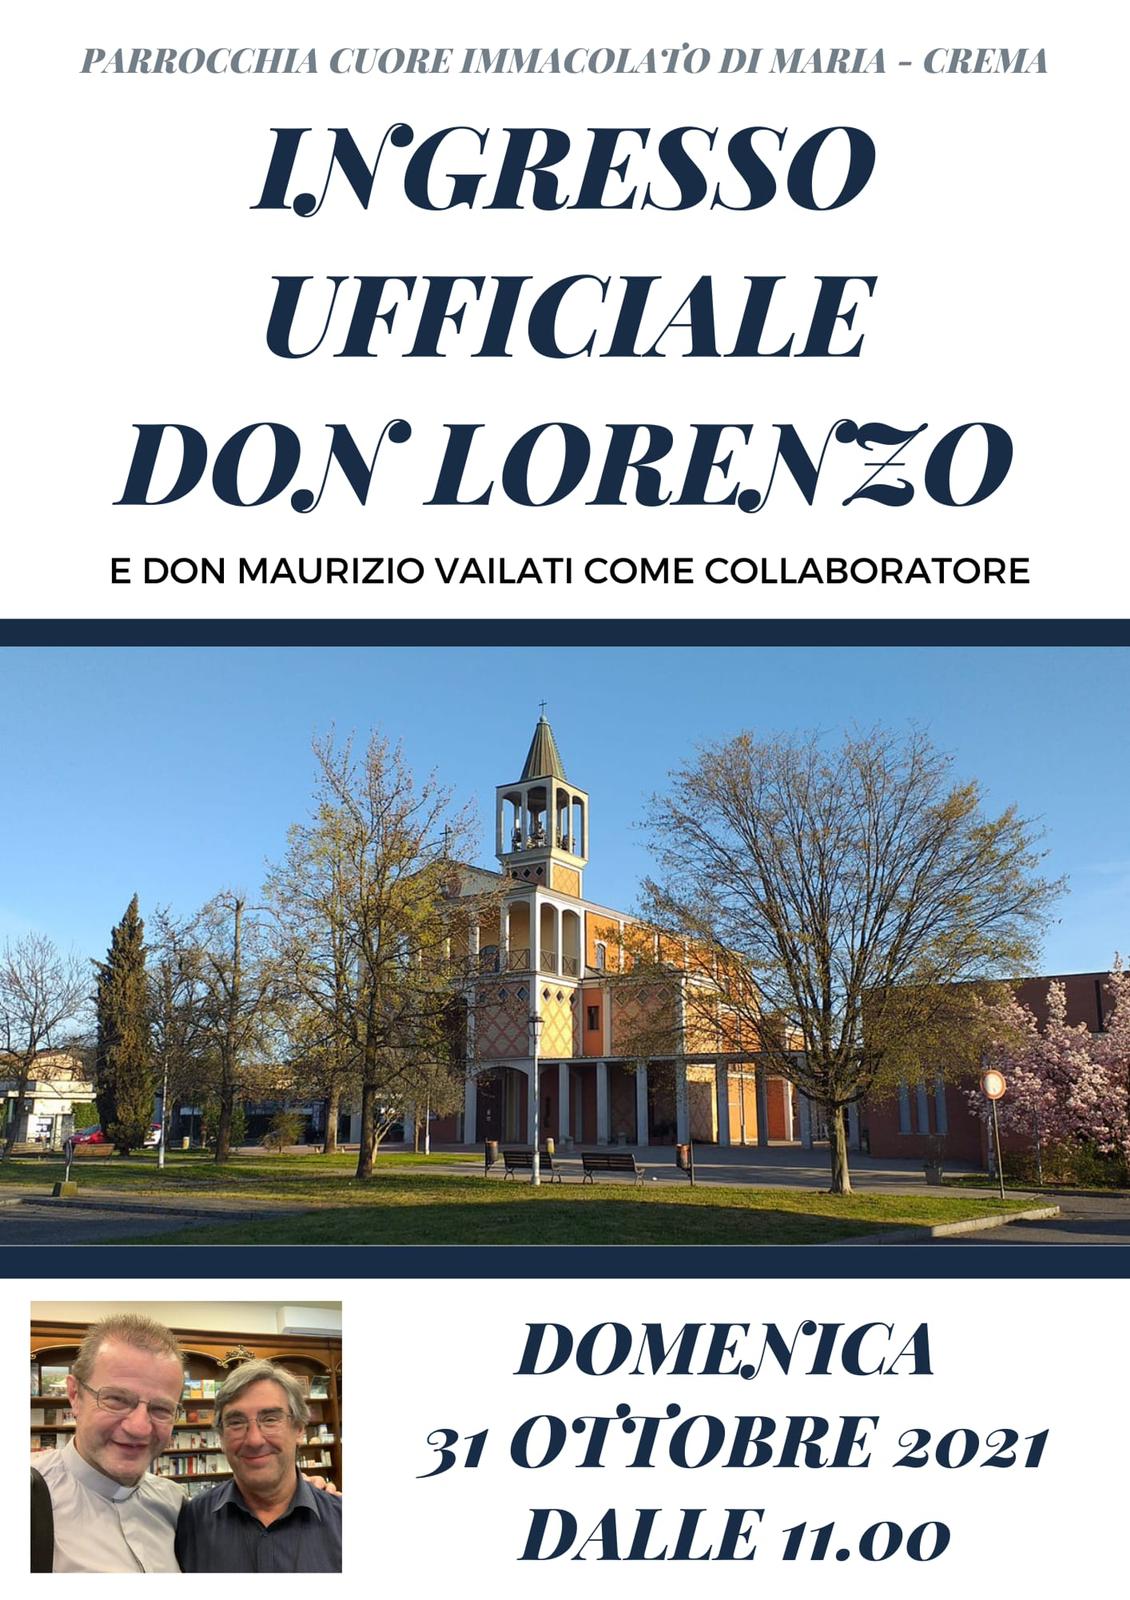 Domenica prossima don Lorenzo Roncali (con don Maurizio Vailati come collaboratore) farà il suo ingresso a Castelnuovo